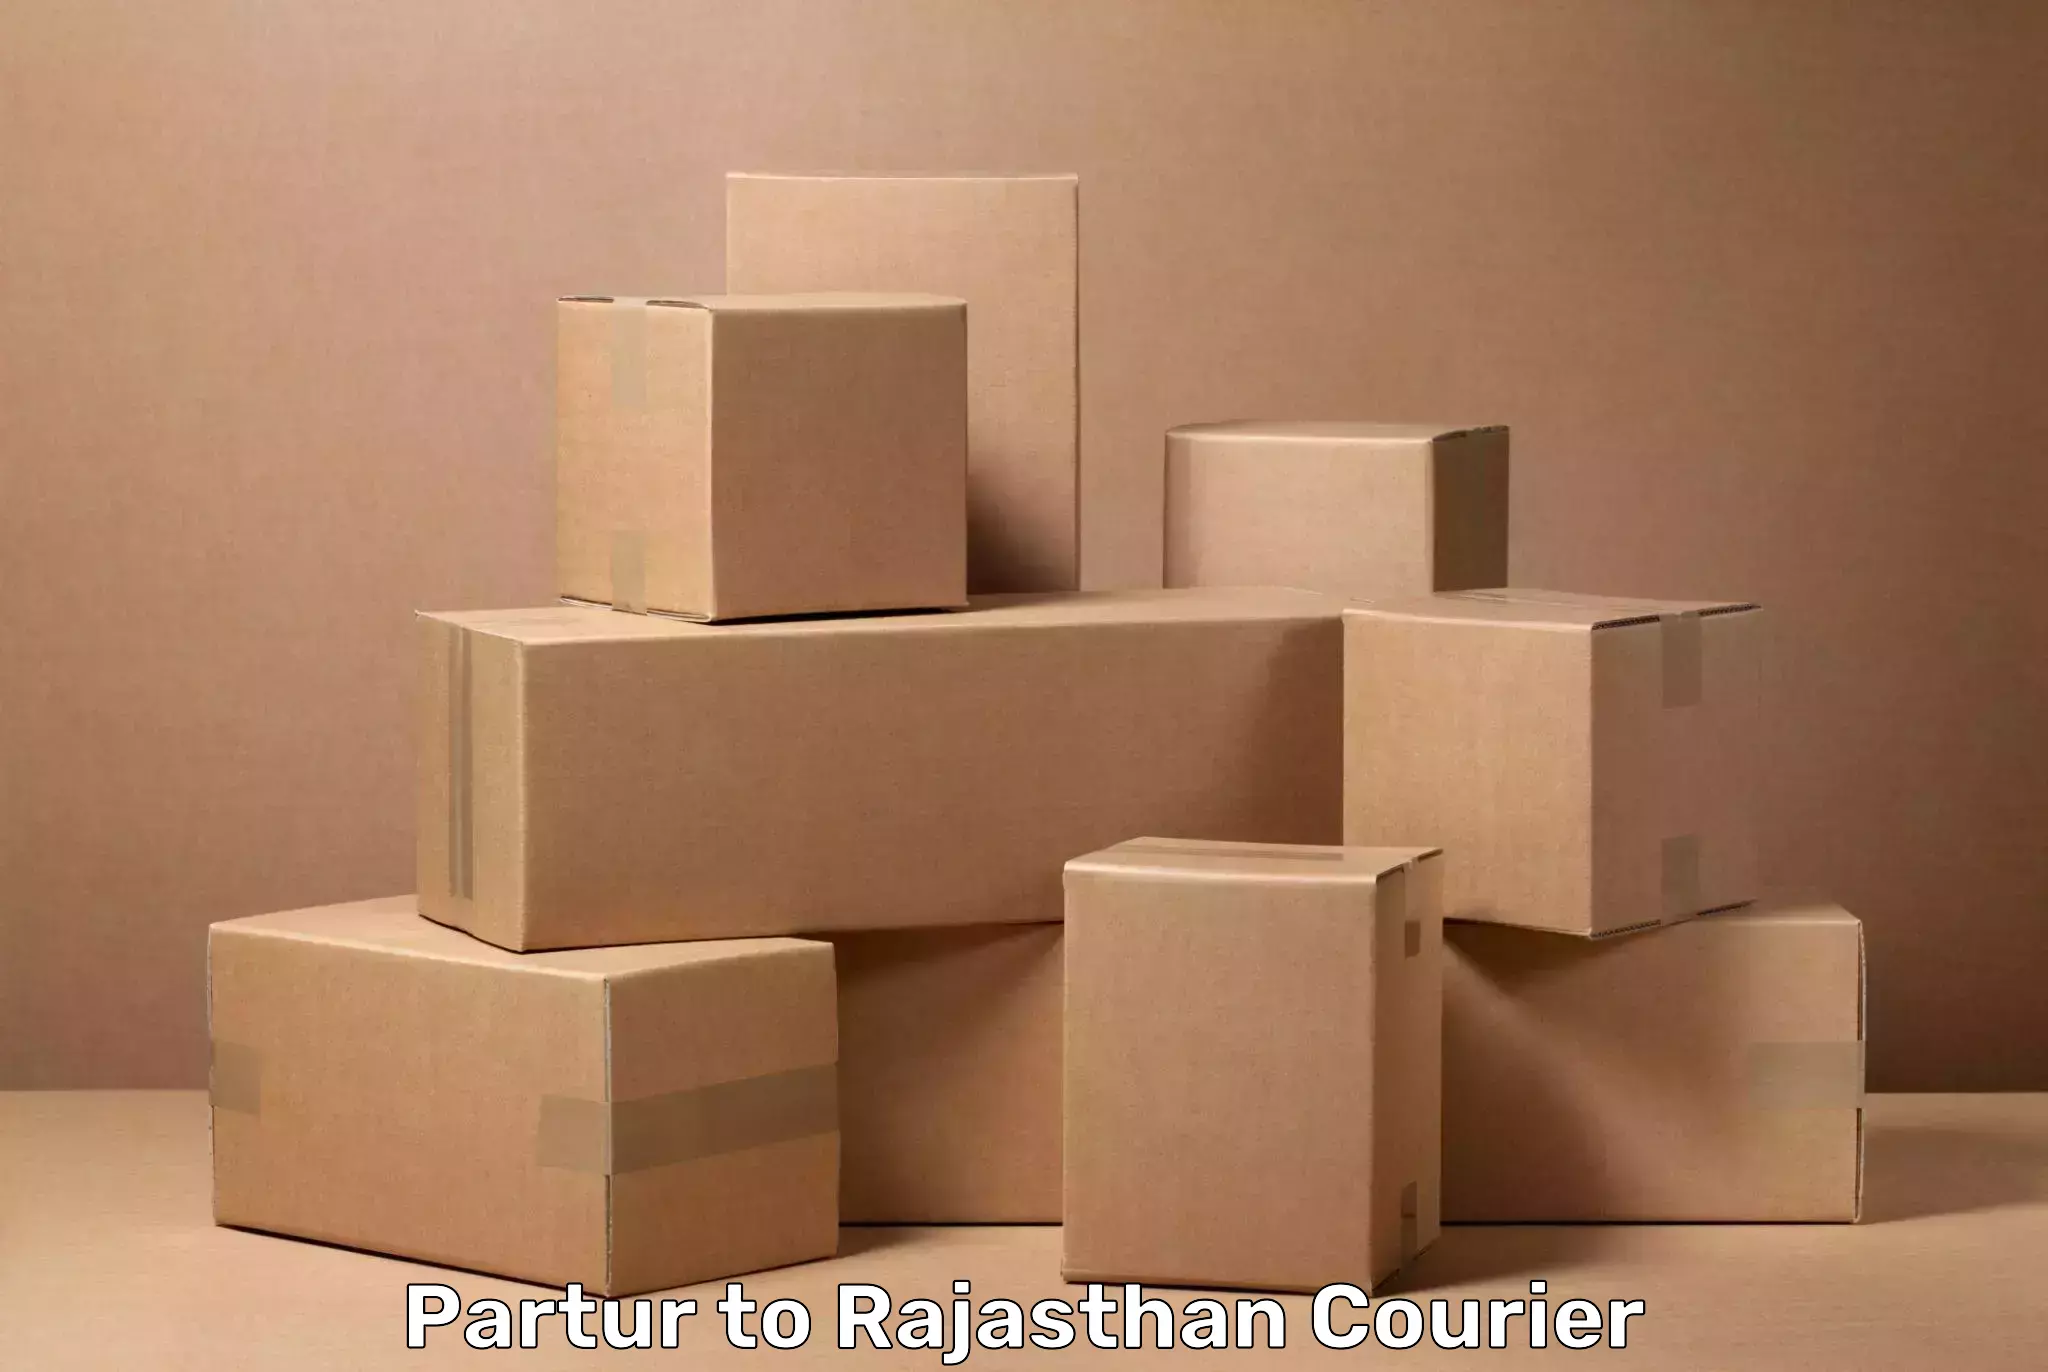 Luggage transport logistics Partur to Pratapgarh Rajasthan